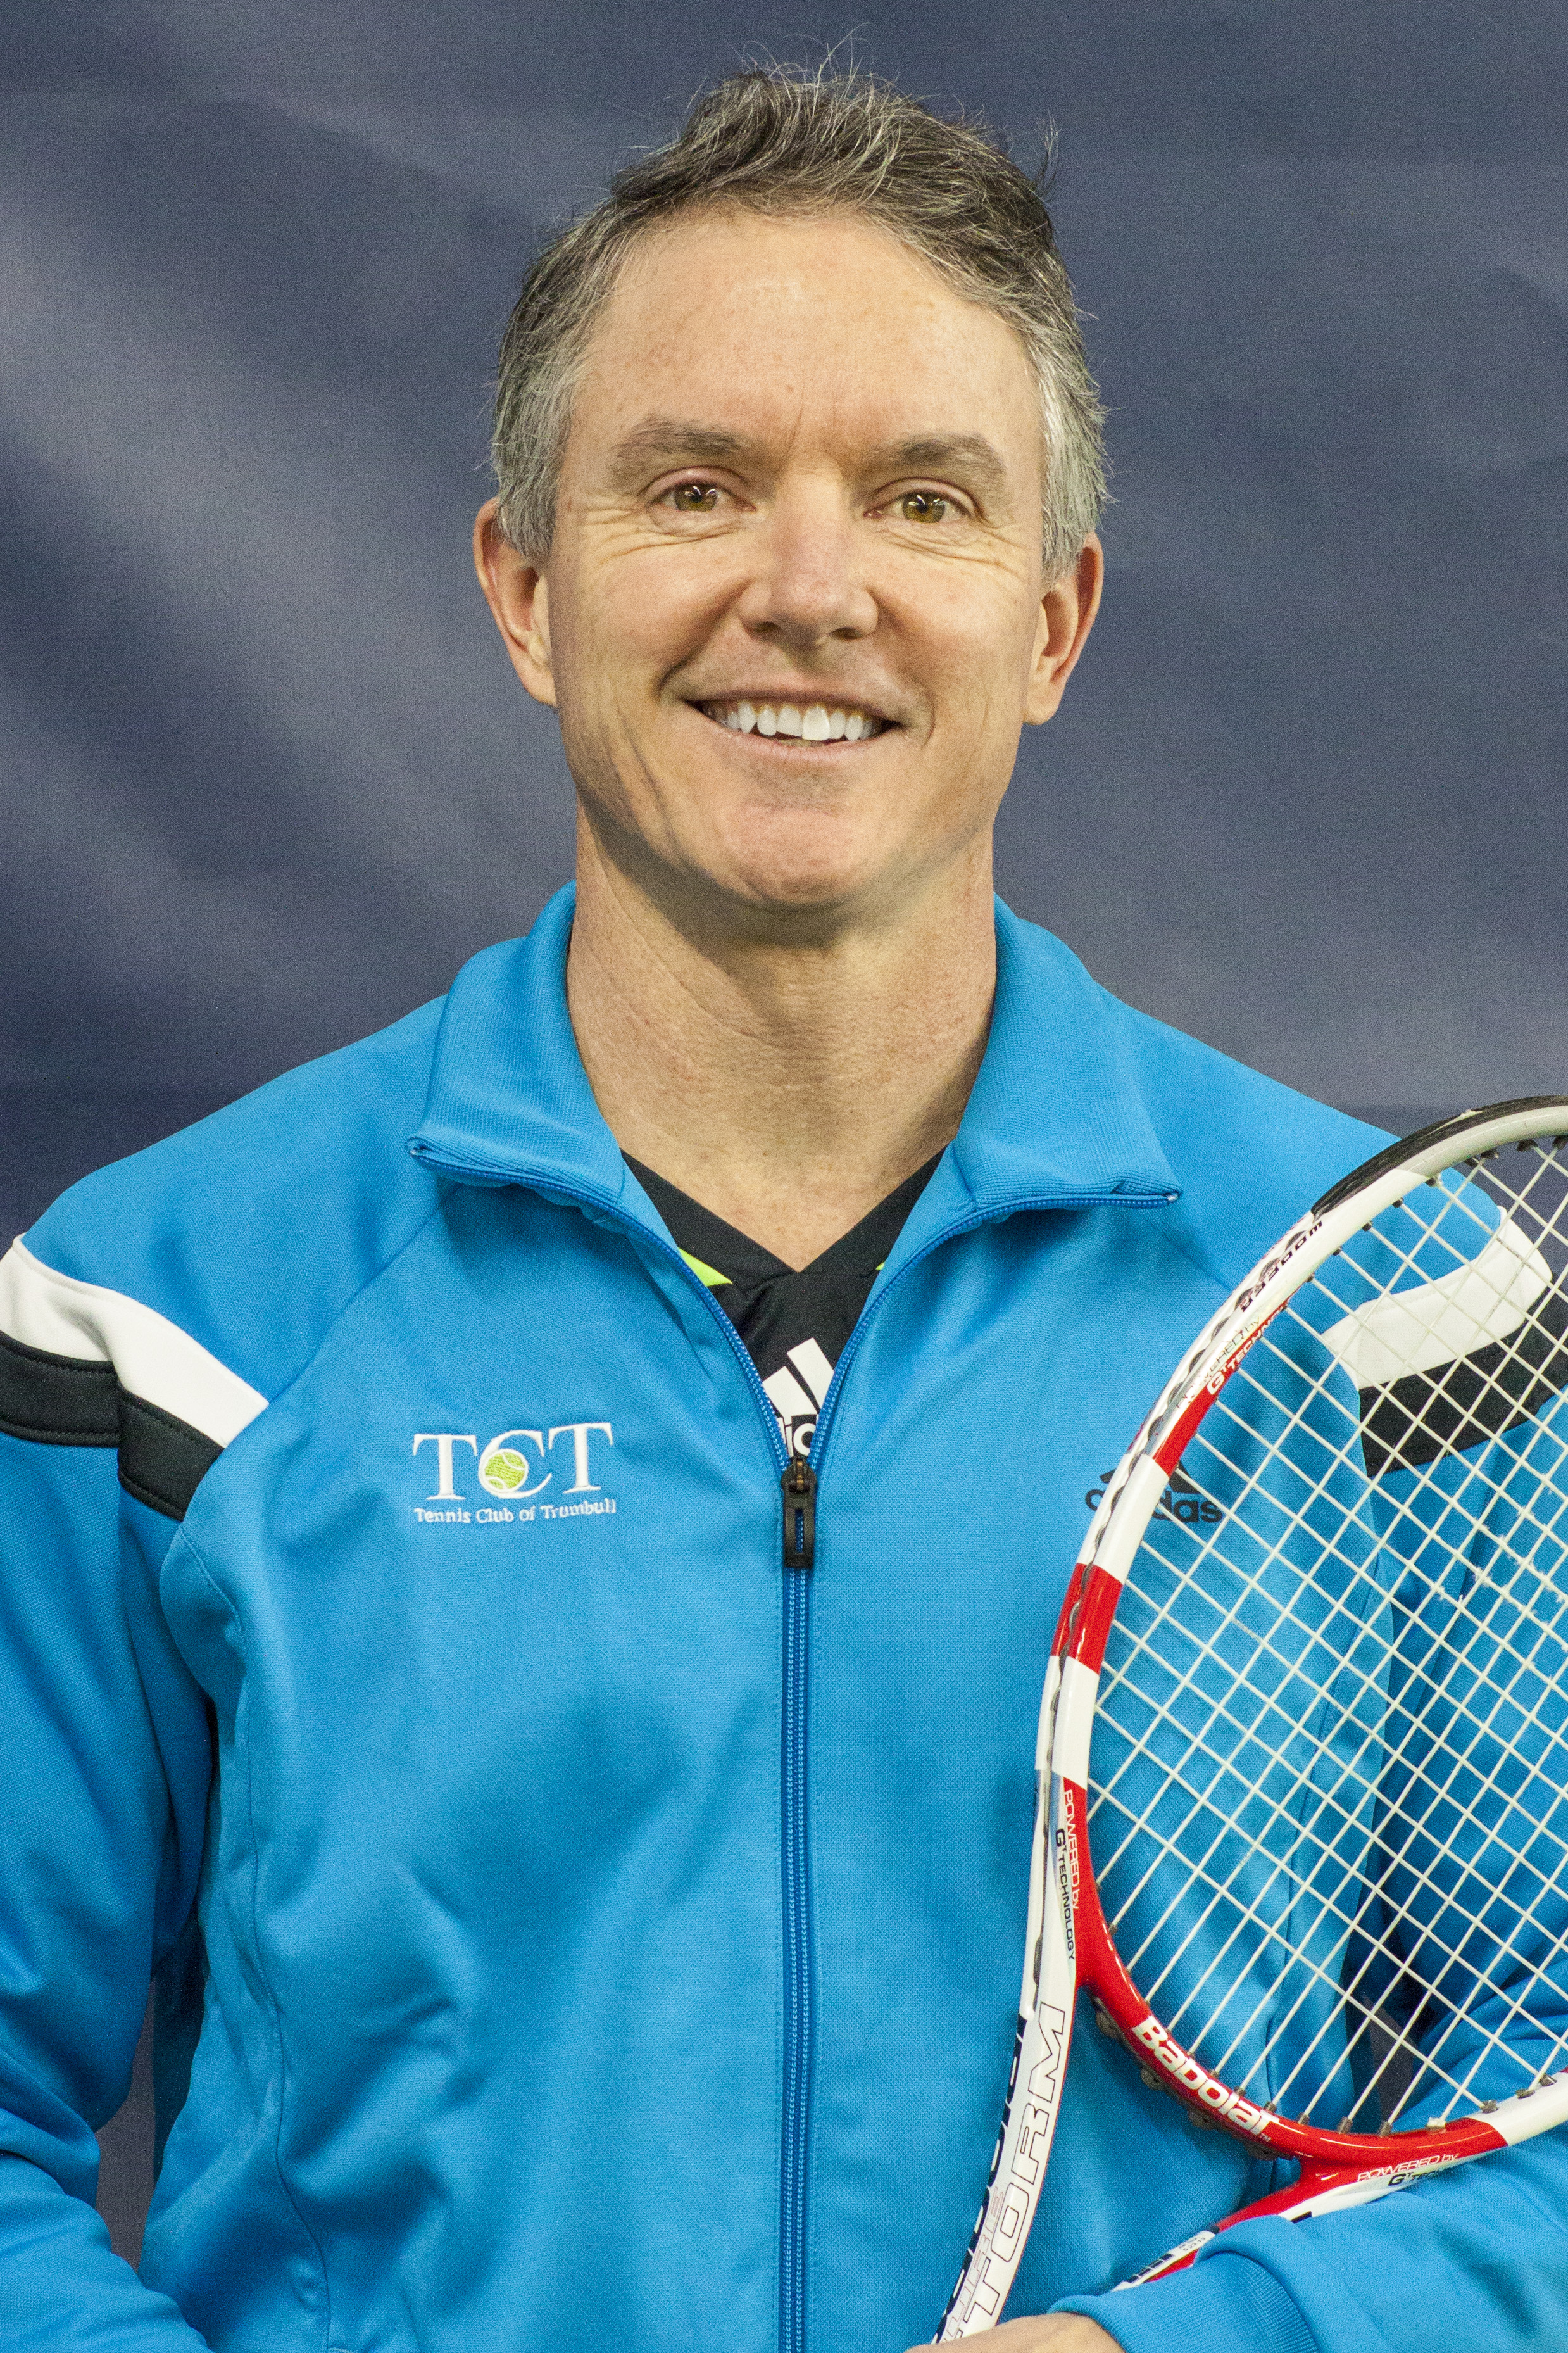 Tennis Club of Trumbull (TCT)